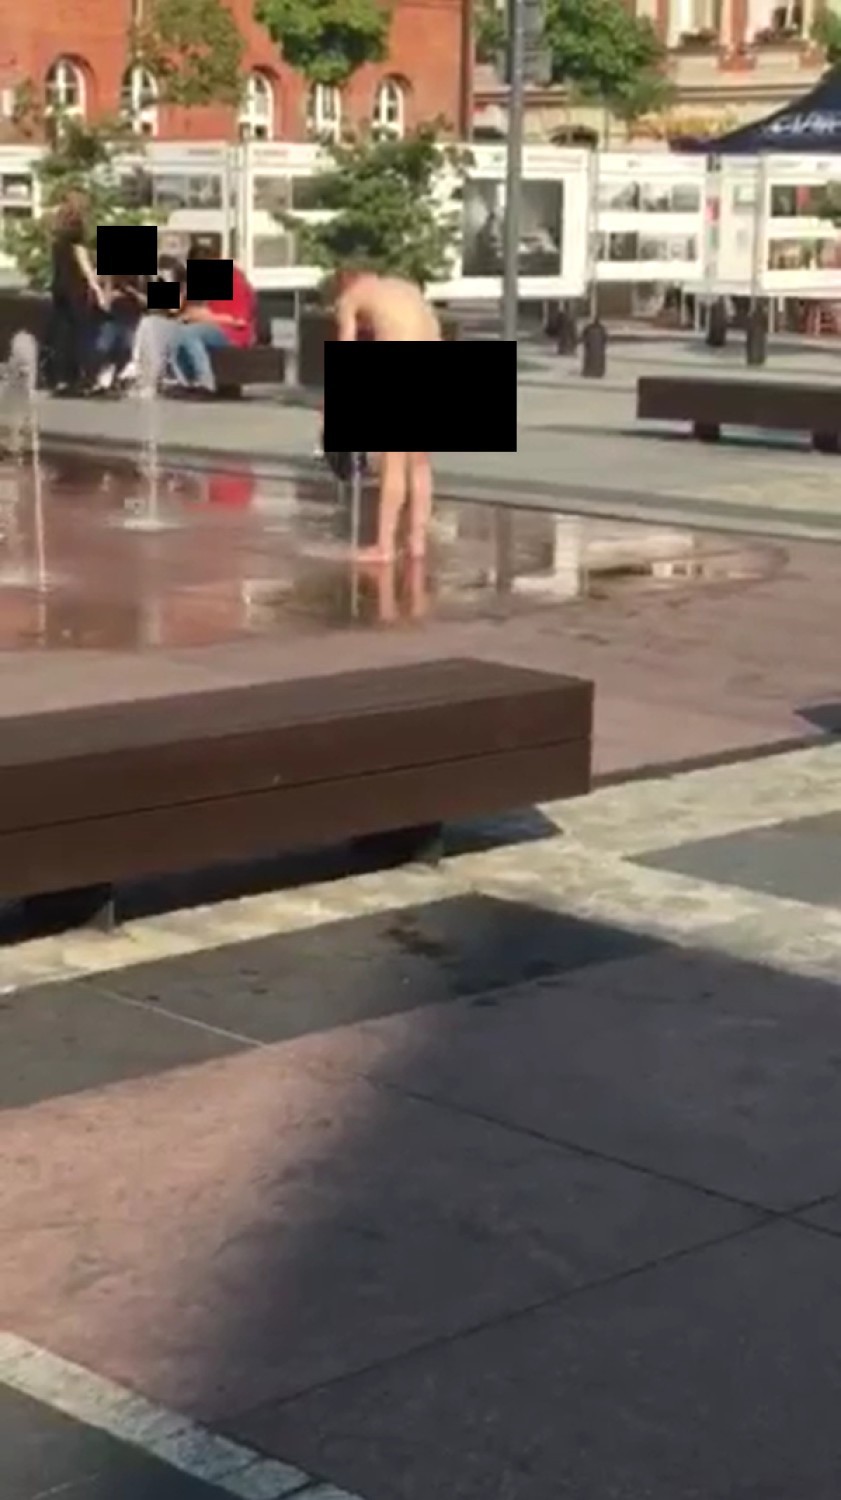 Nagi mężczyzna kąpie się i pierze w fontannie w Szczecinku [zdjęcia]